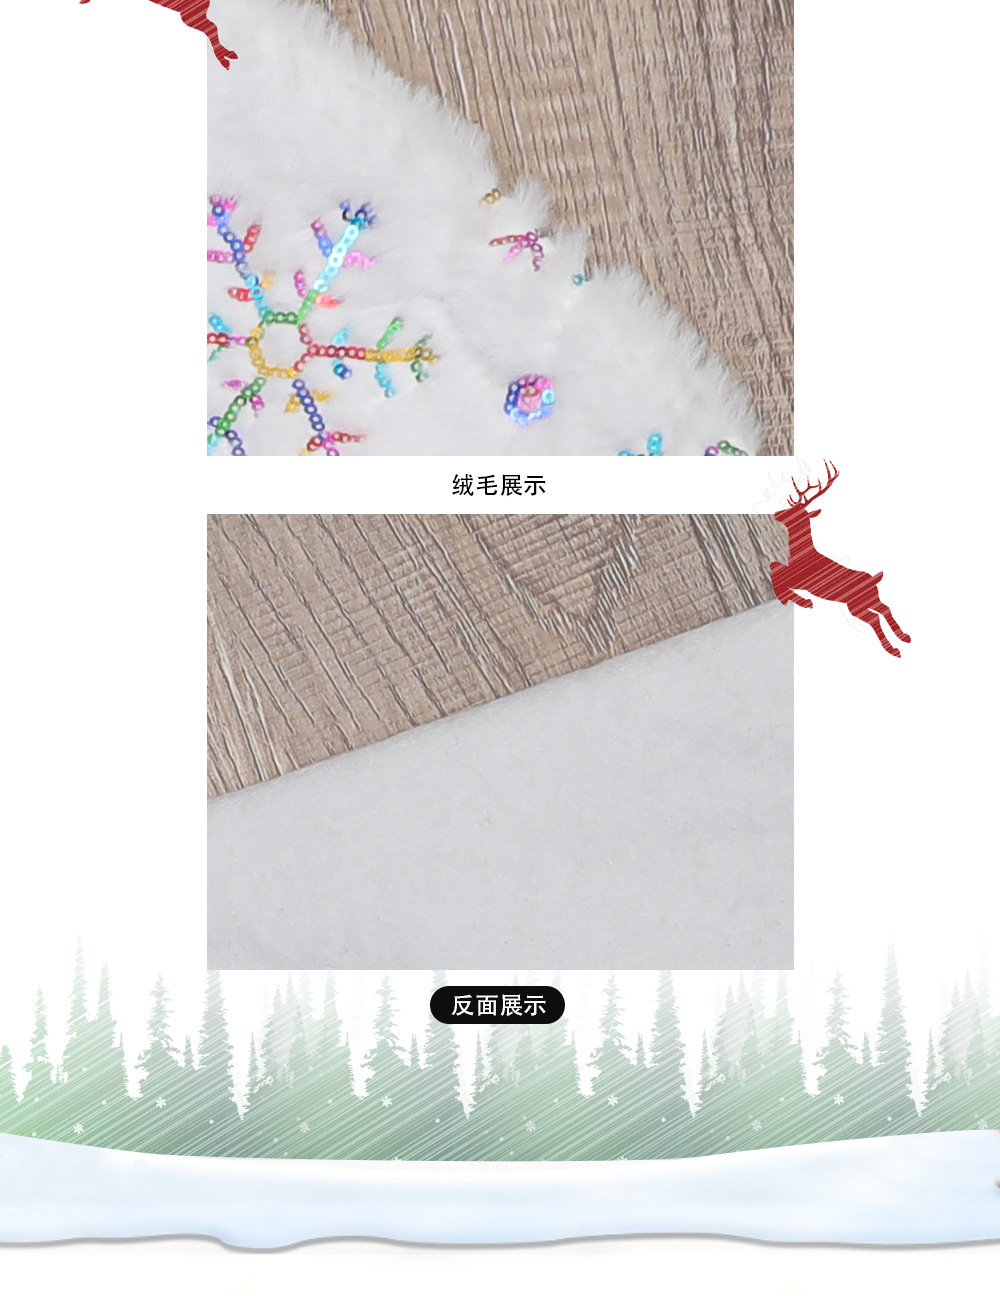 聖誕冰晶雪花樹群 創意聖誕樹雪花地墊 聖誕節必備裝飾布置4